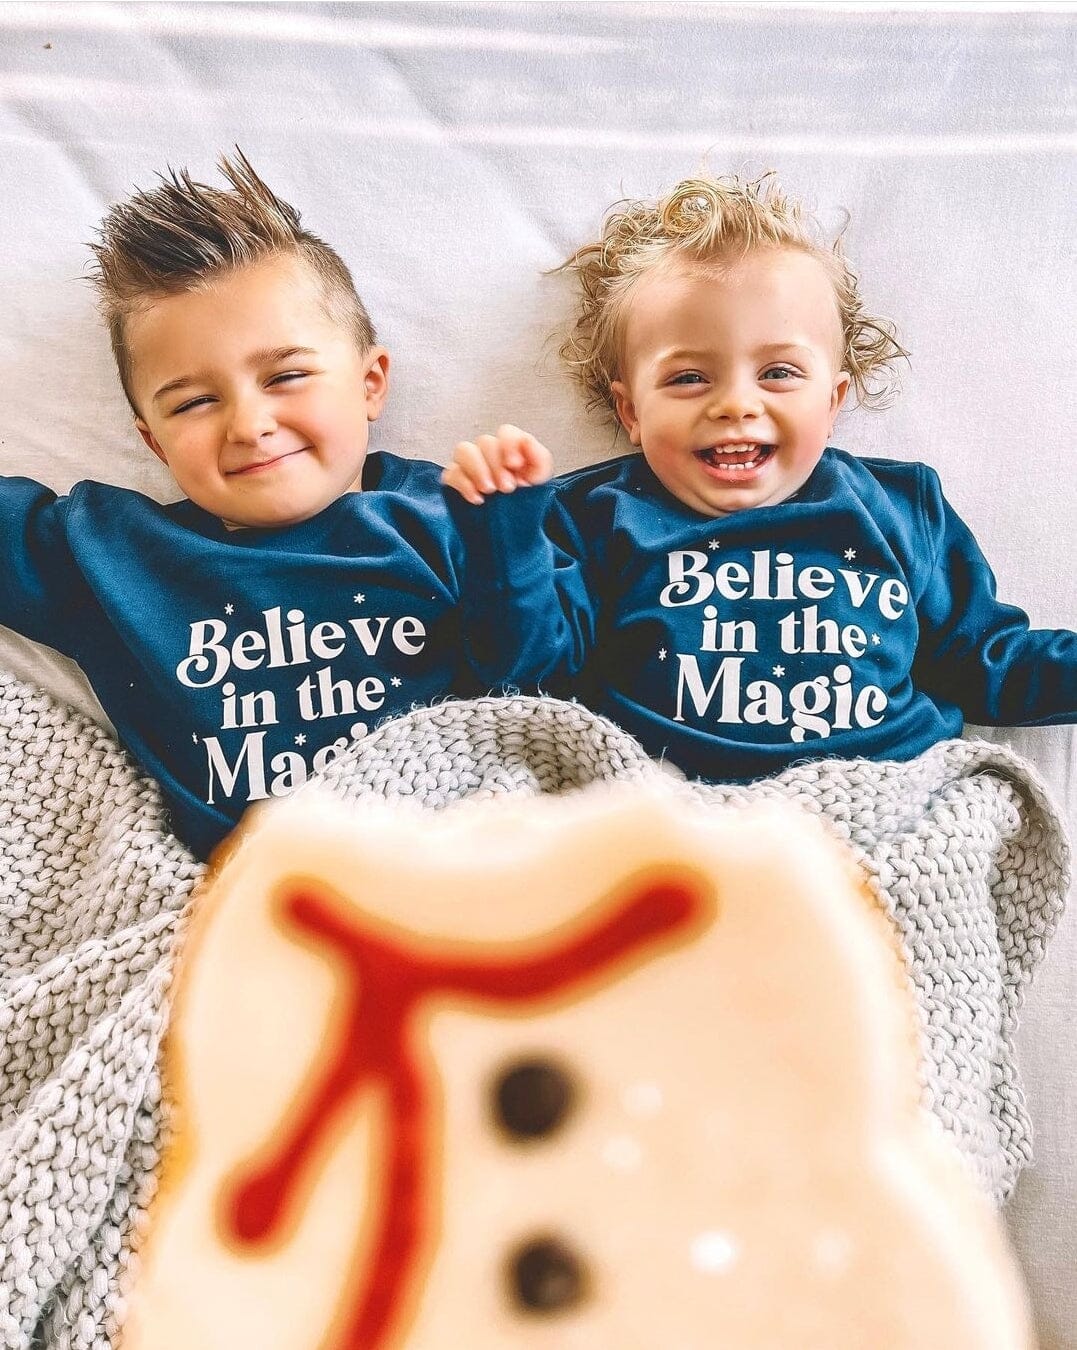 Believe in The Magic Toddler Sweatshirt